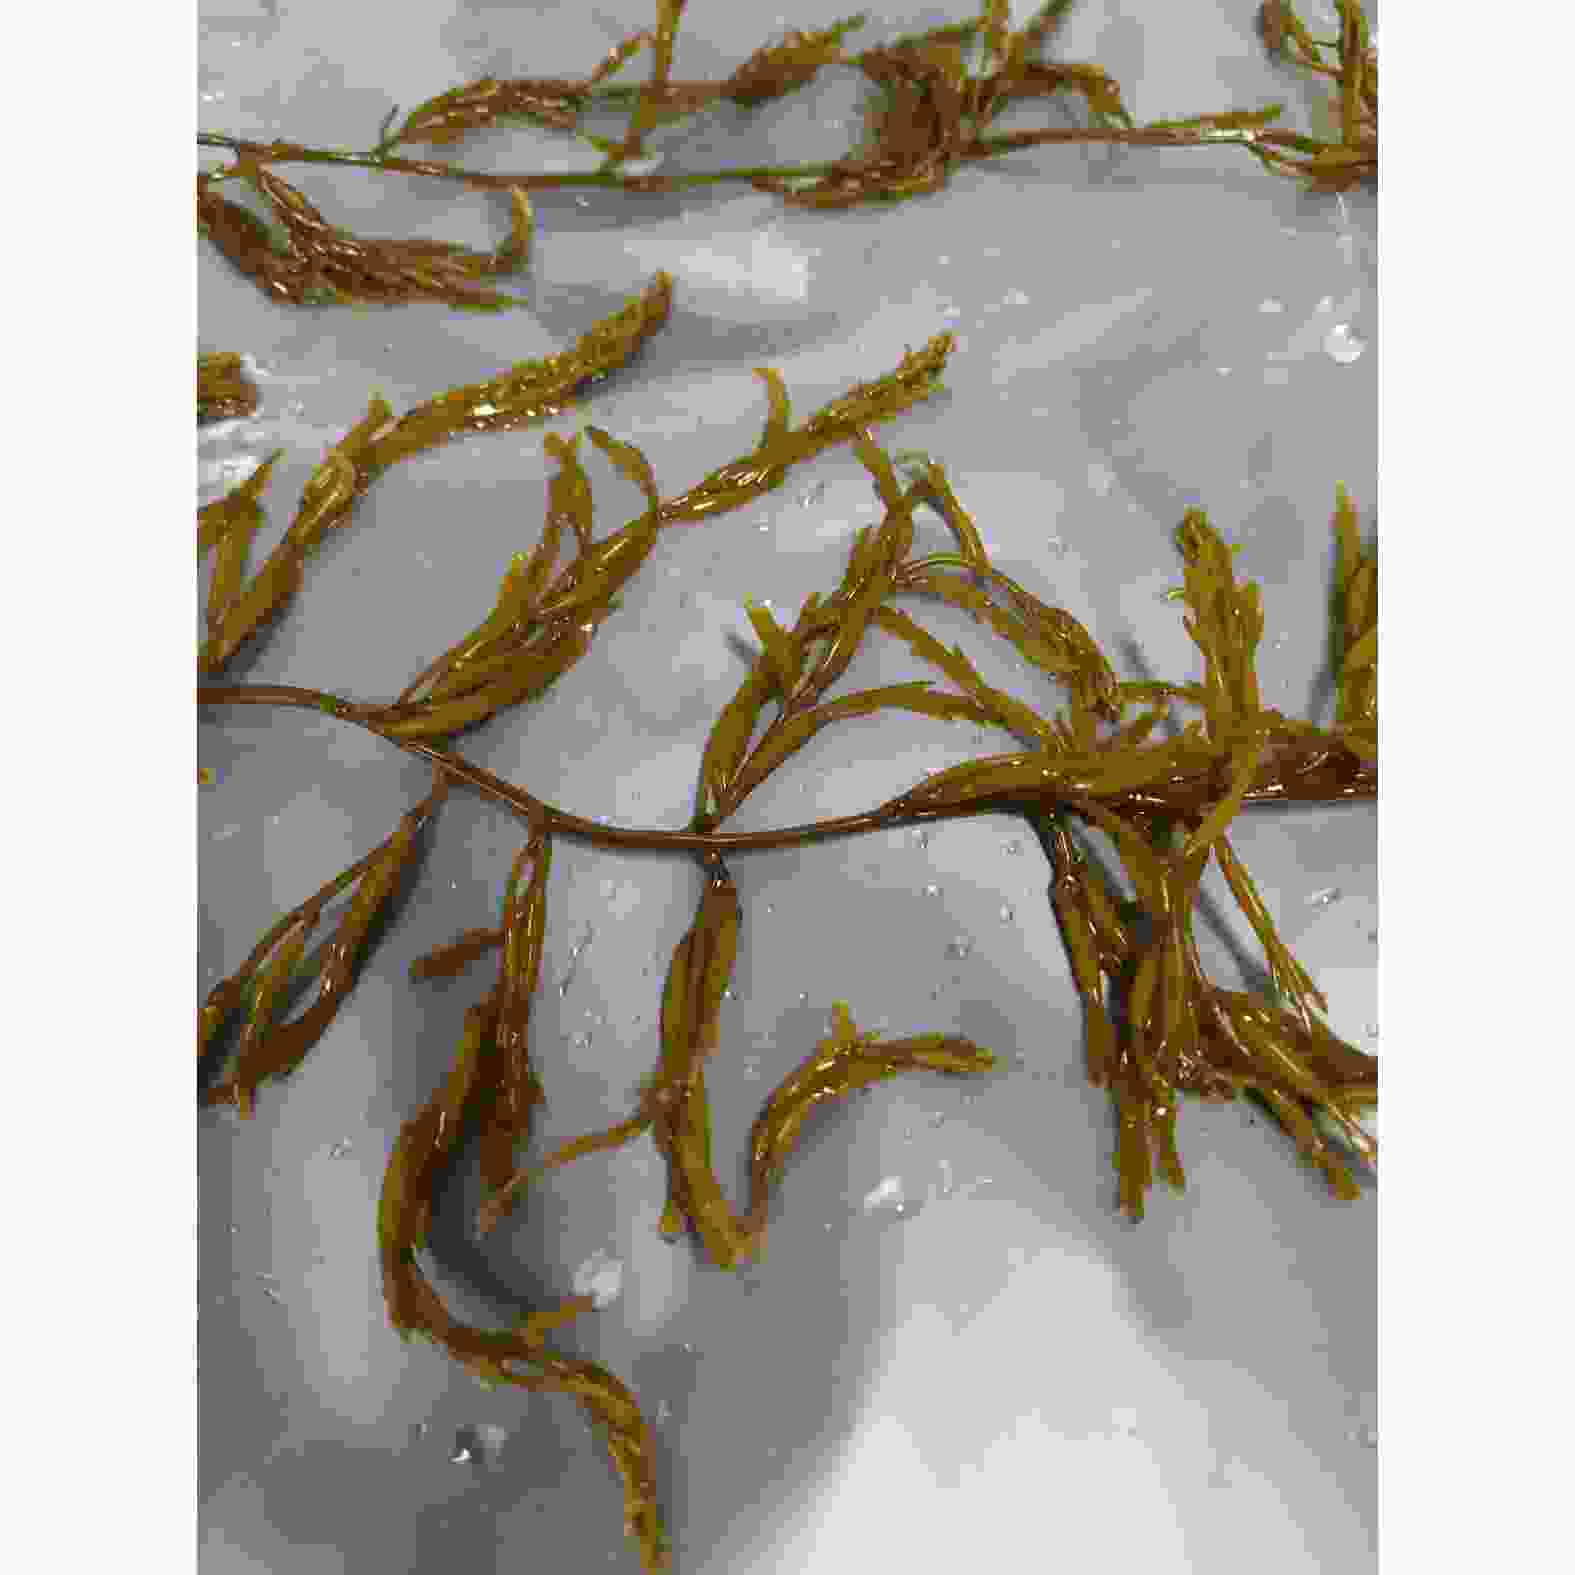 brown algae sargassum